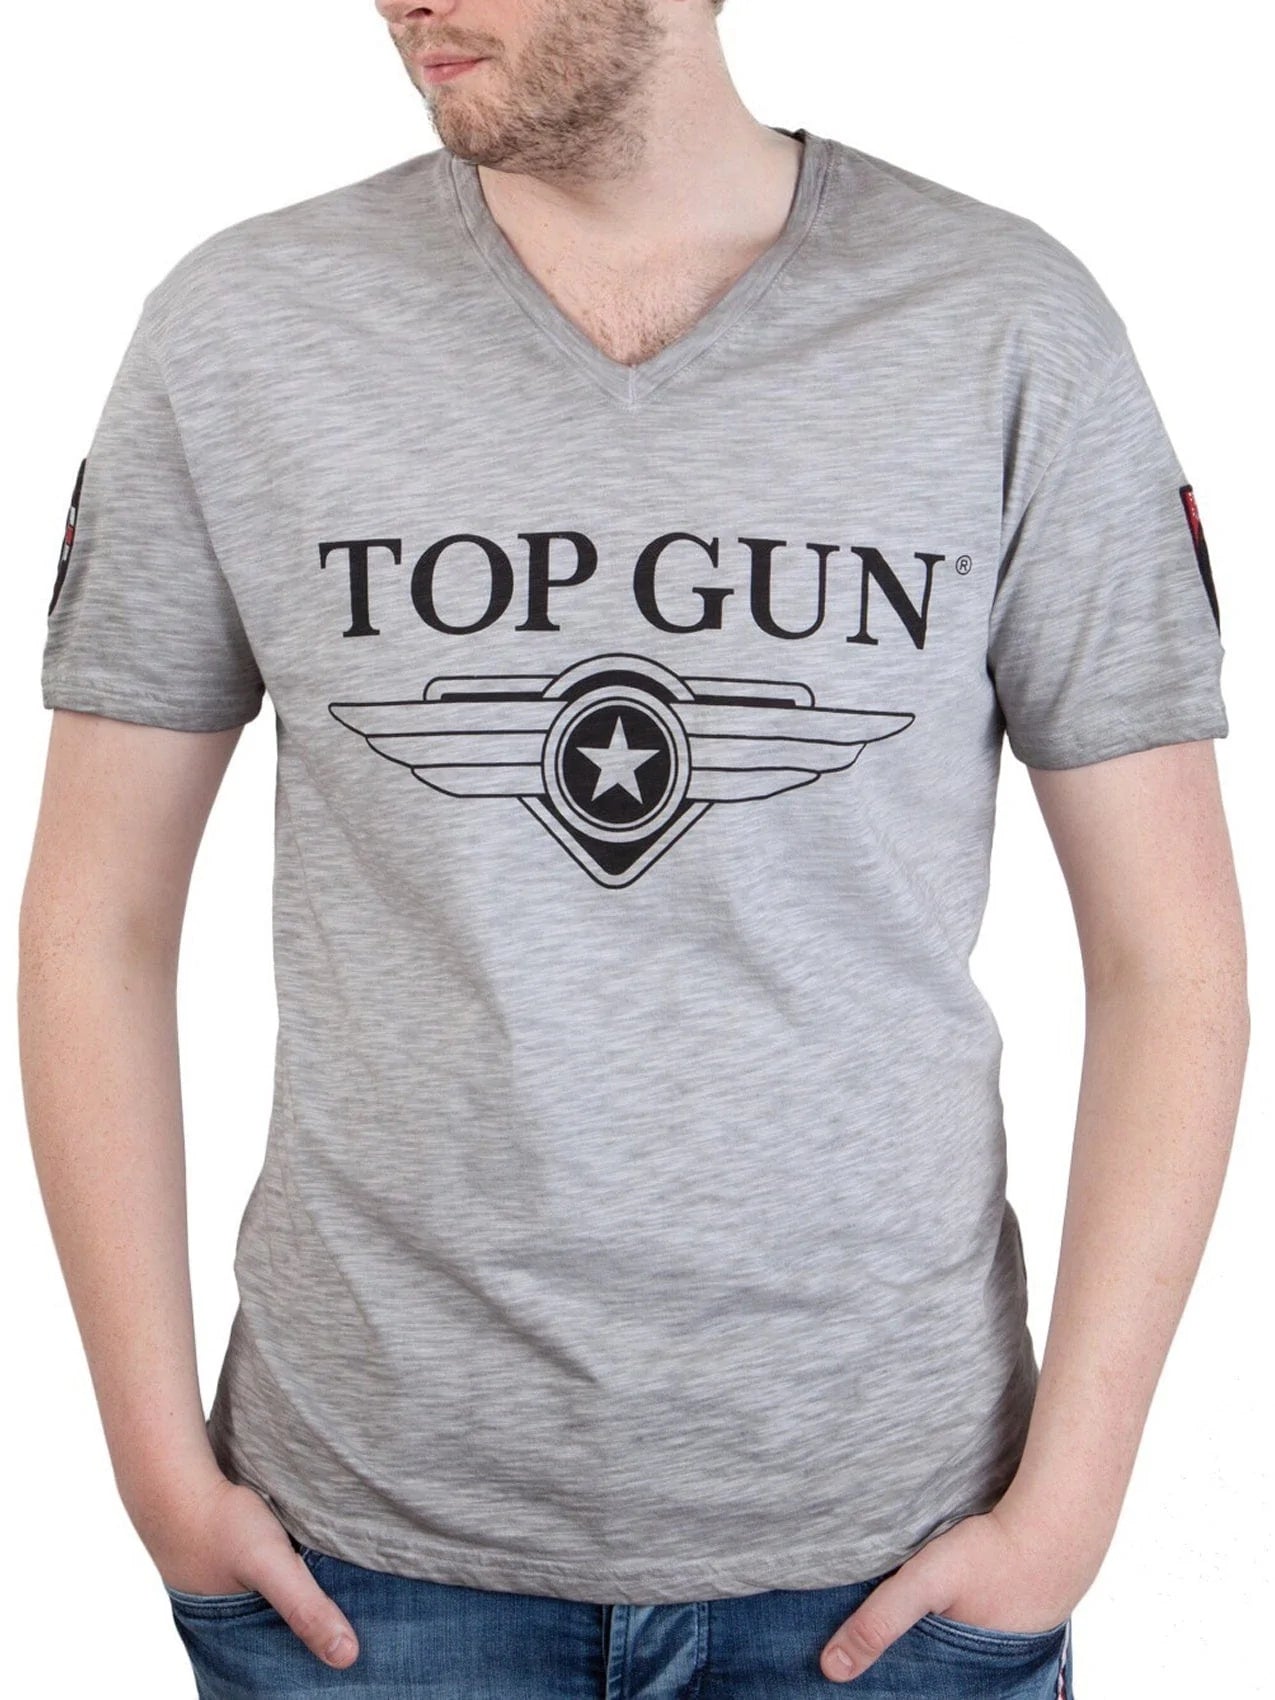 Top Gun"Stormy" T-shirt